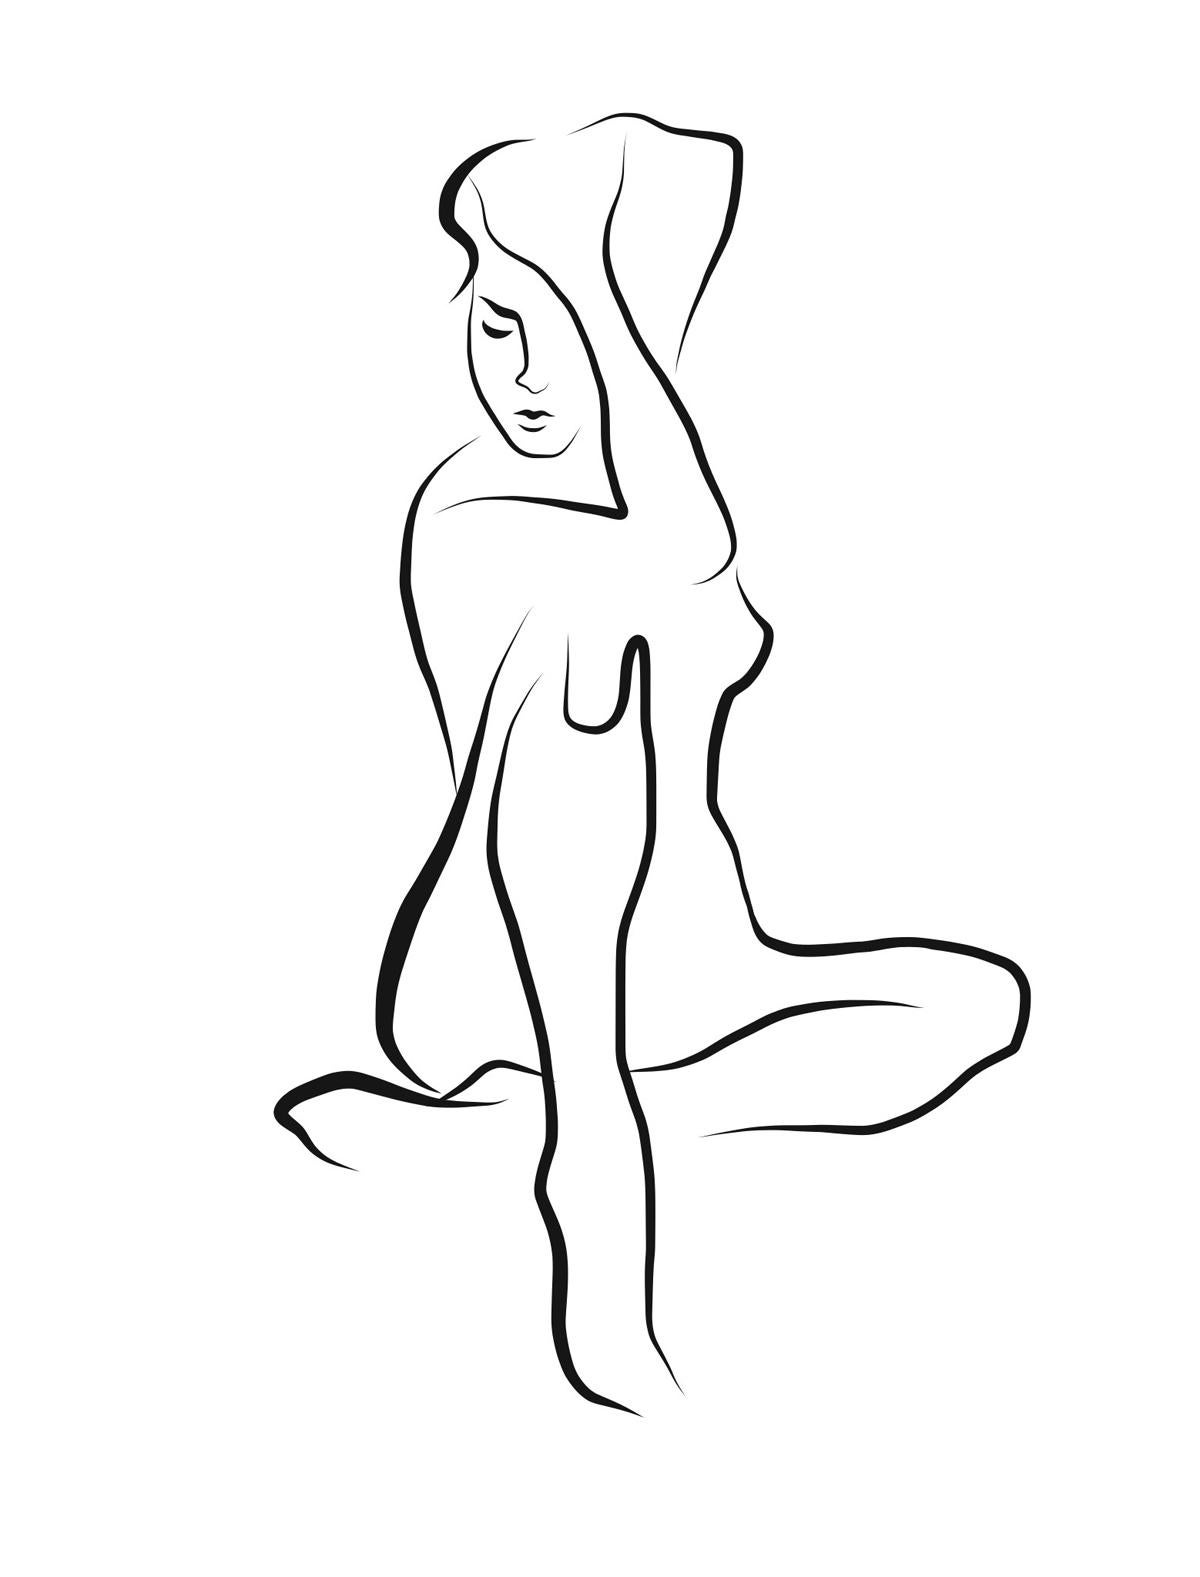 Haiku #41, 1/50 - Digital Vector Drawing Sitting Female Nude Woman Figure Deep T - Art by Michael Binkley